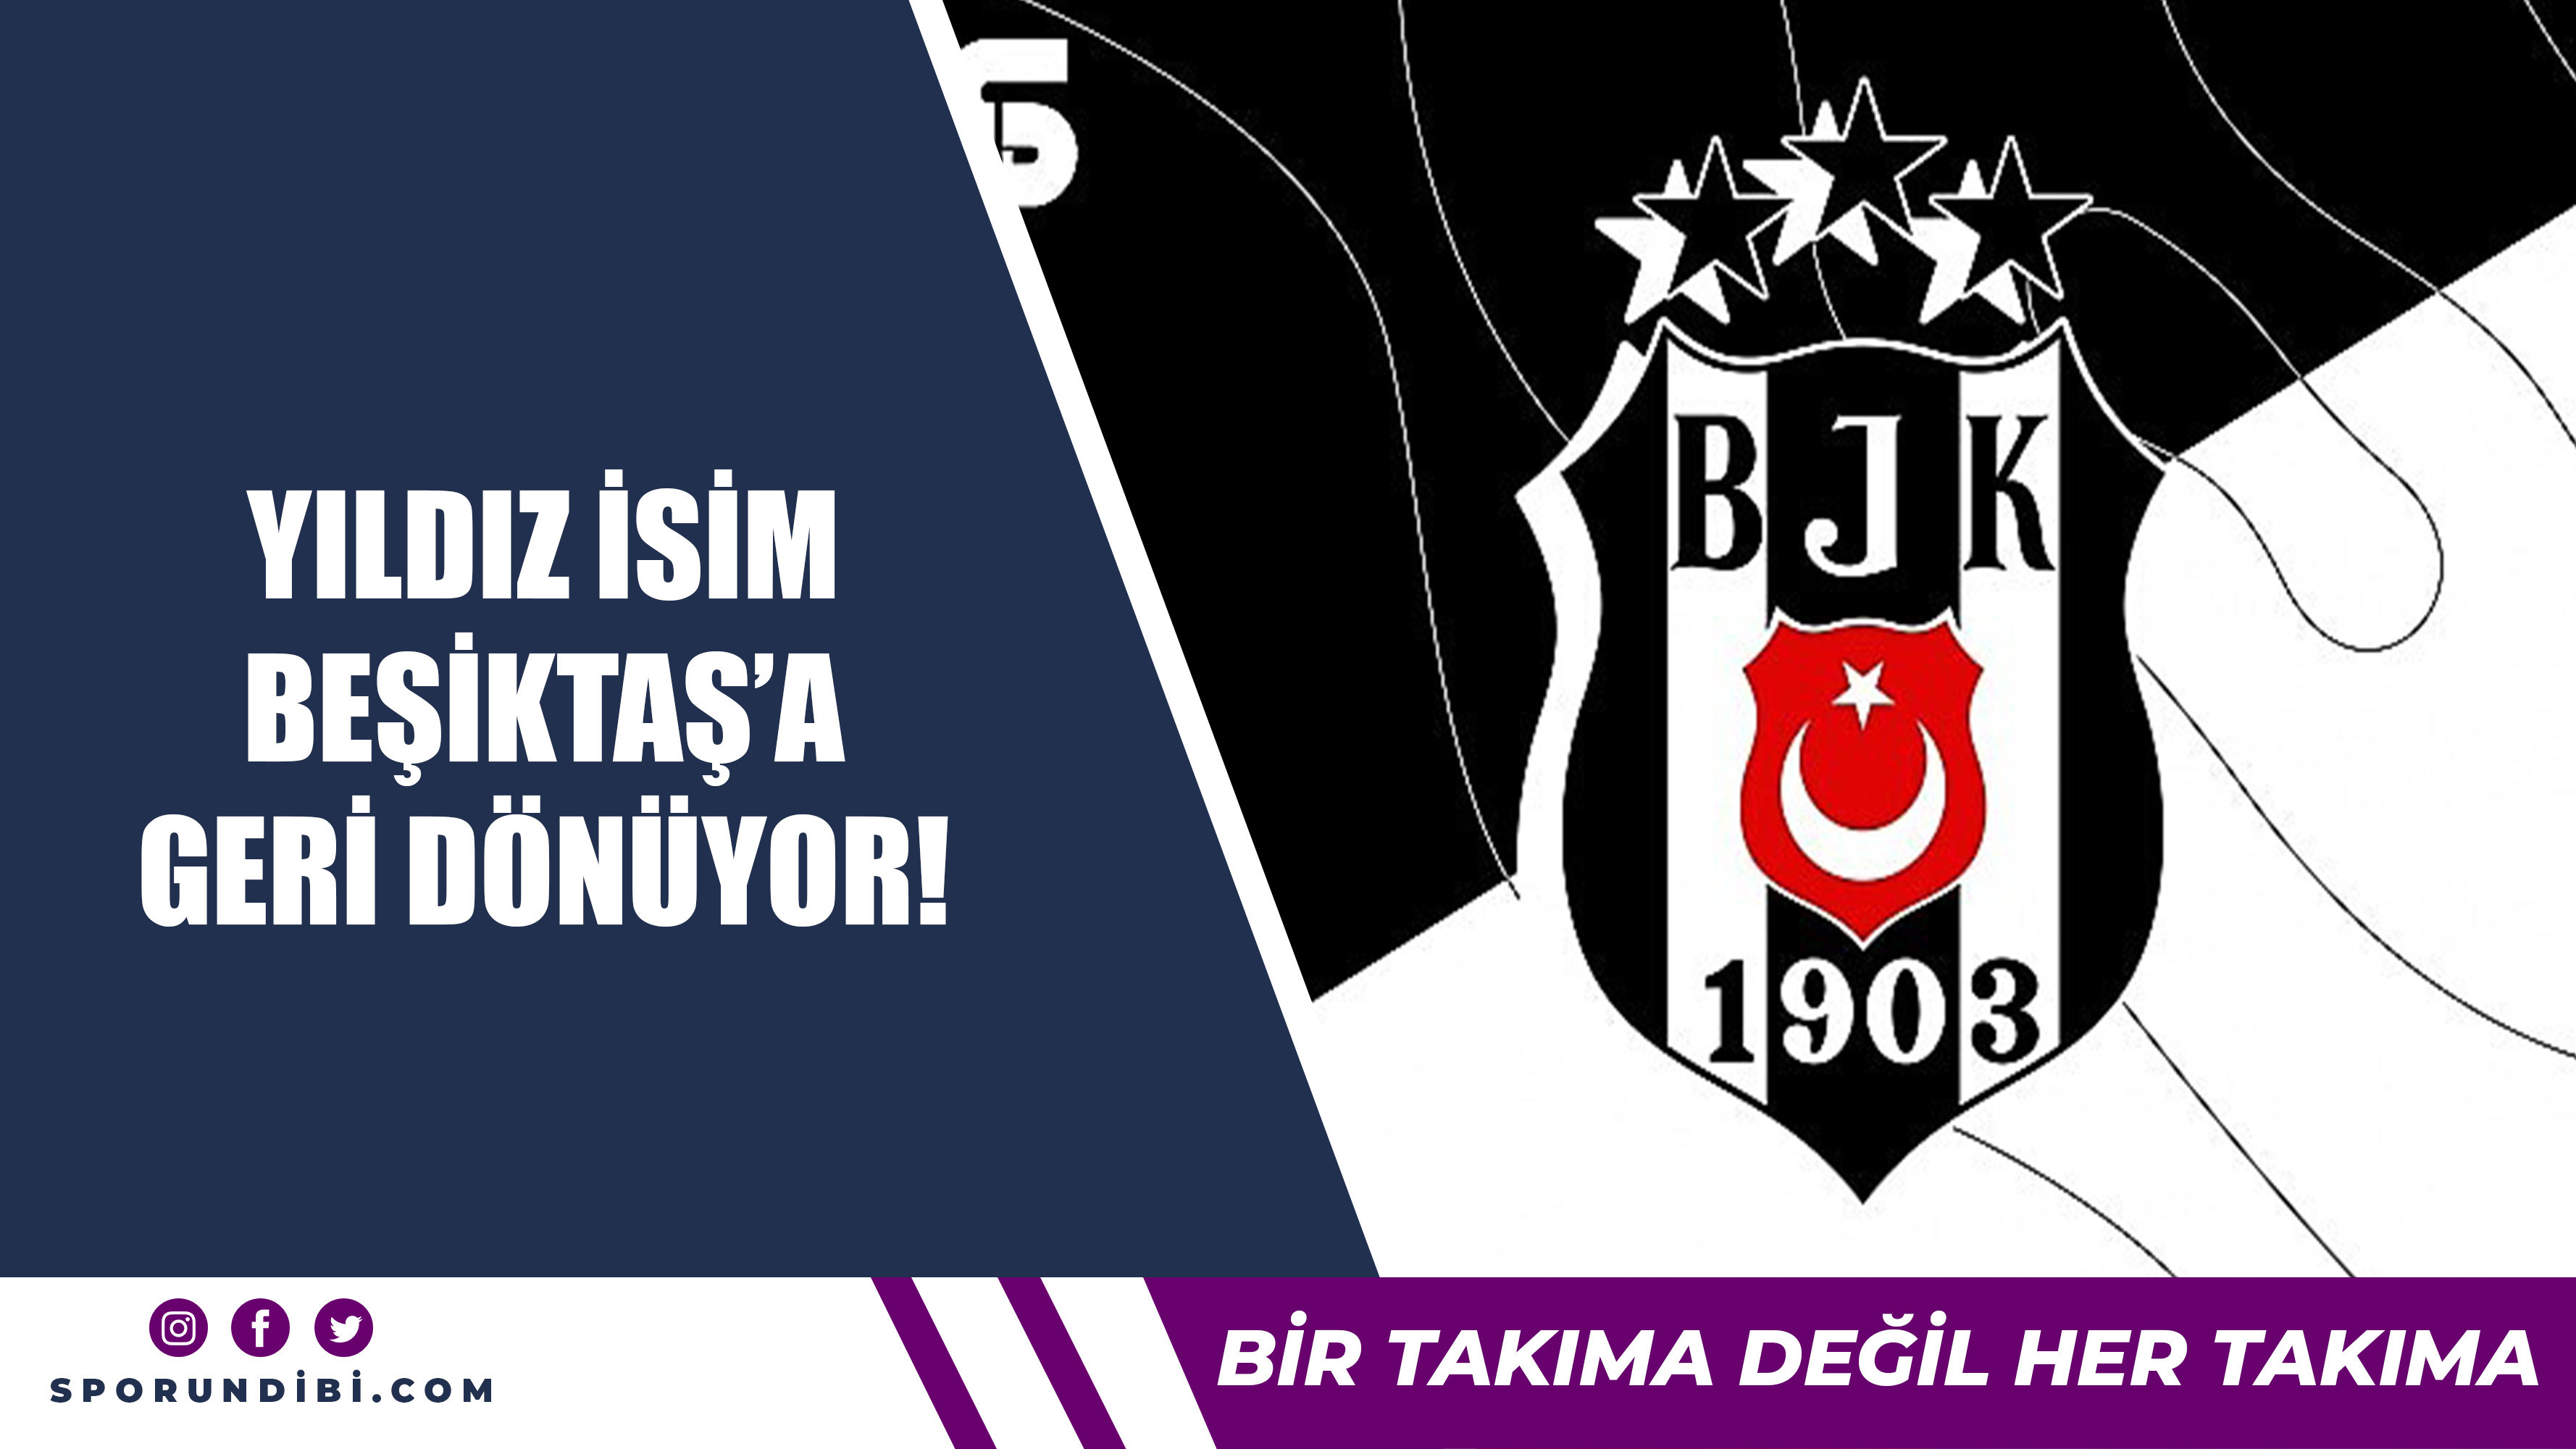 Yıldız isim Beşiktaş'a geri dönüyor!